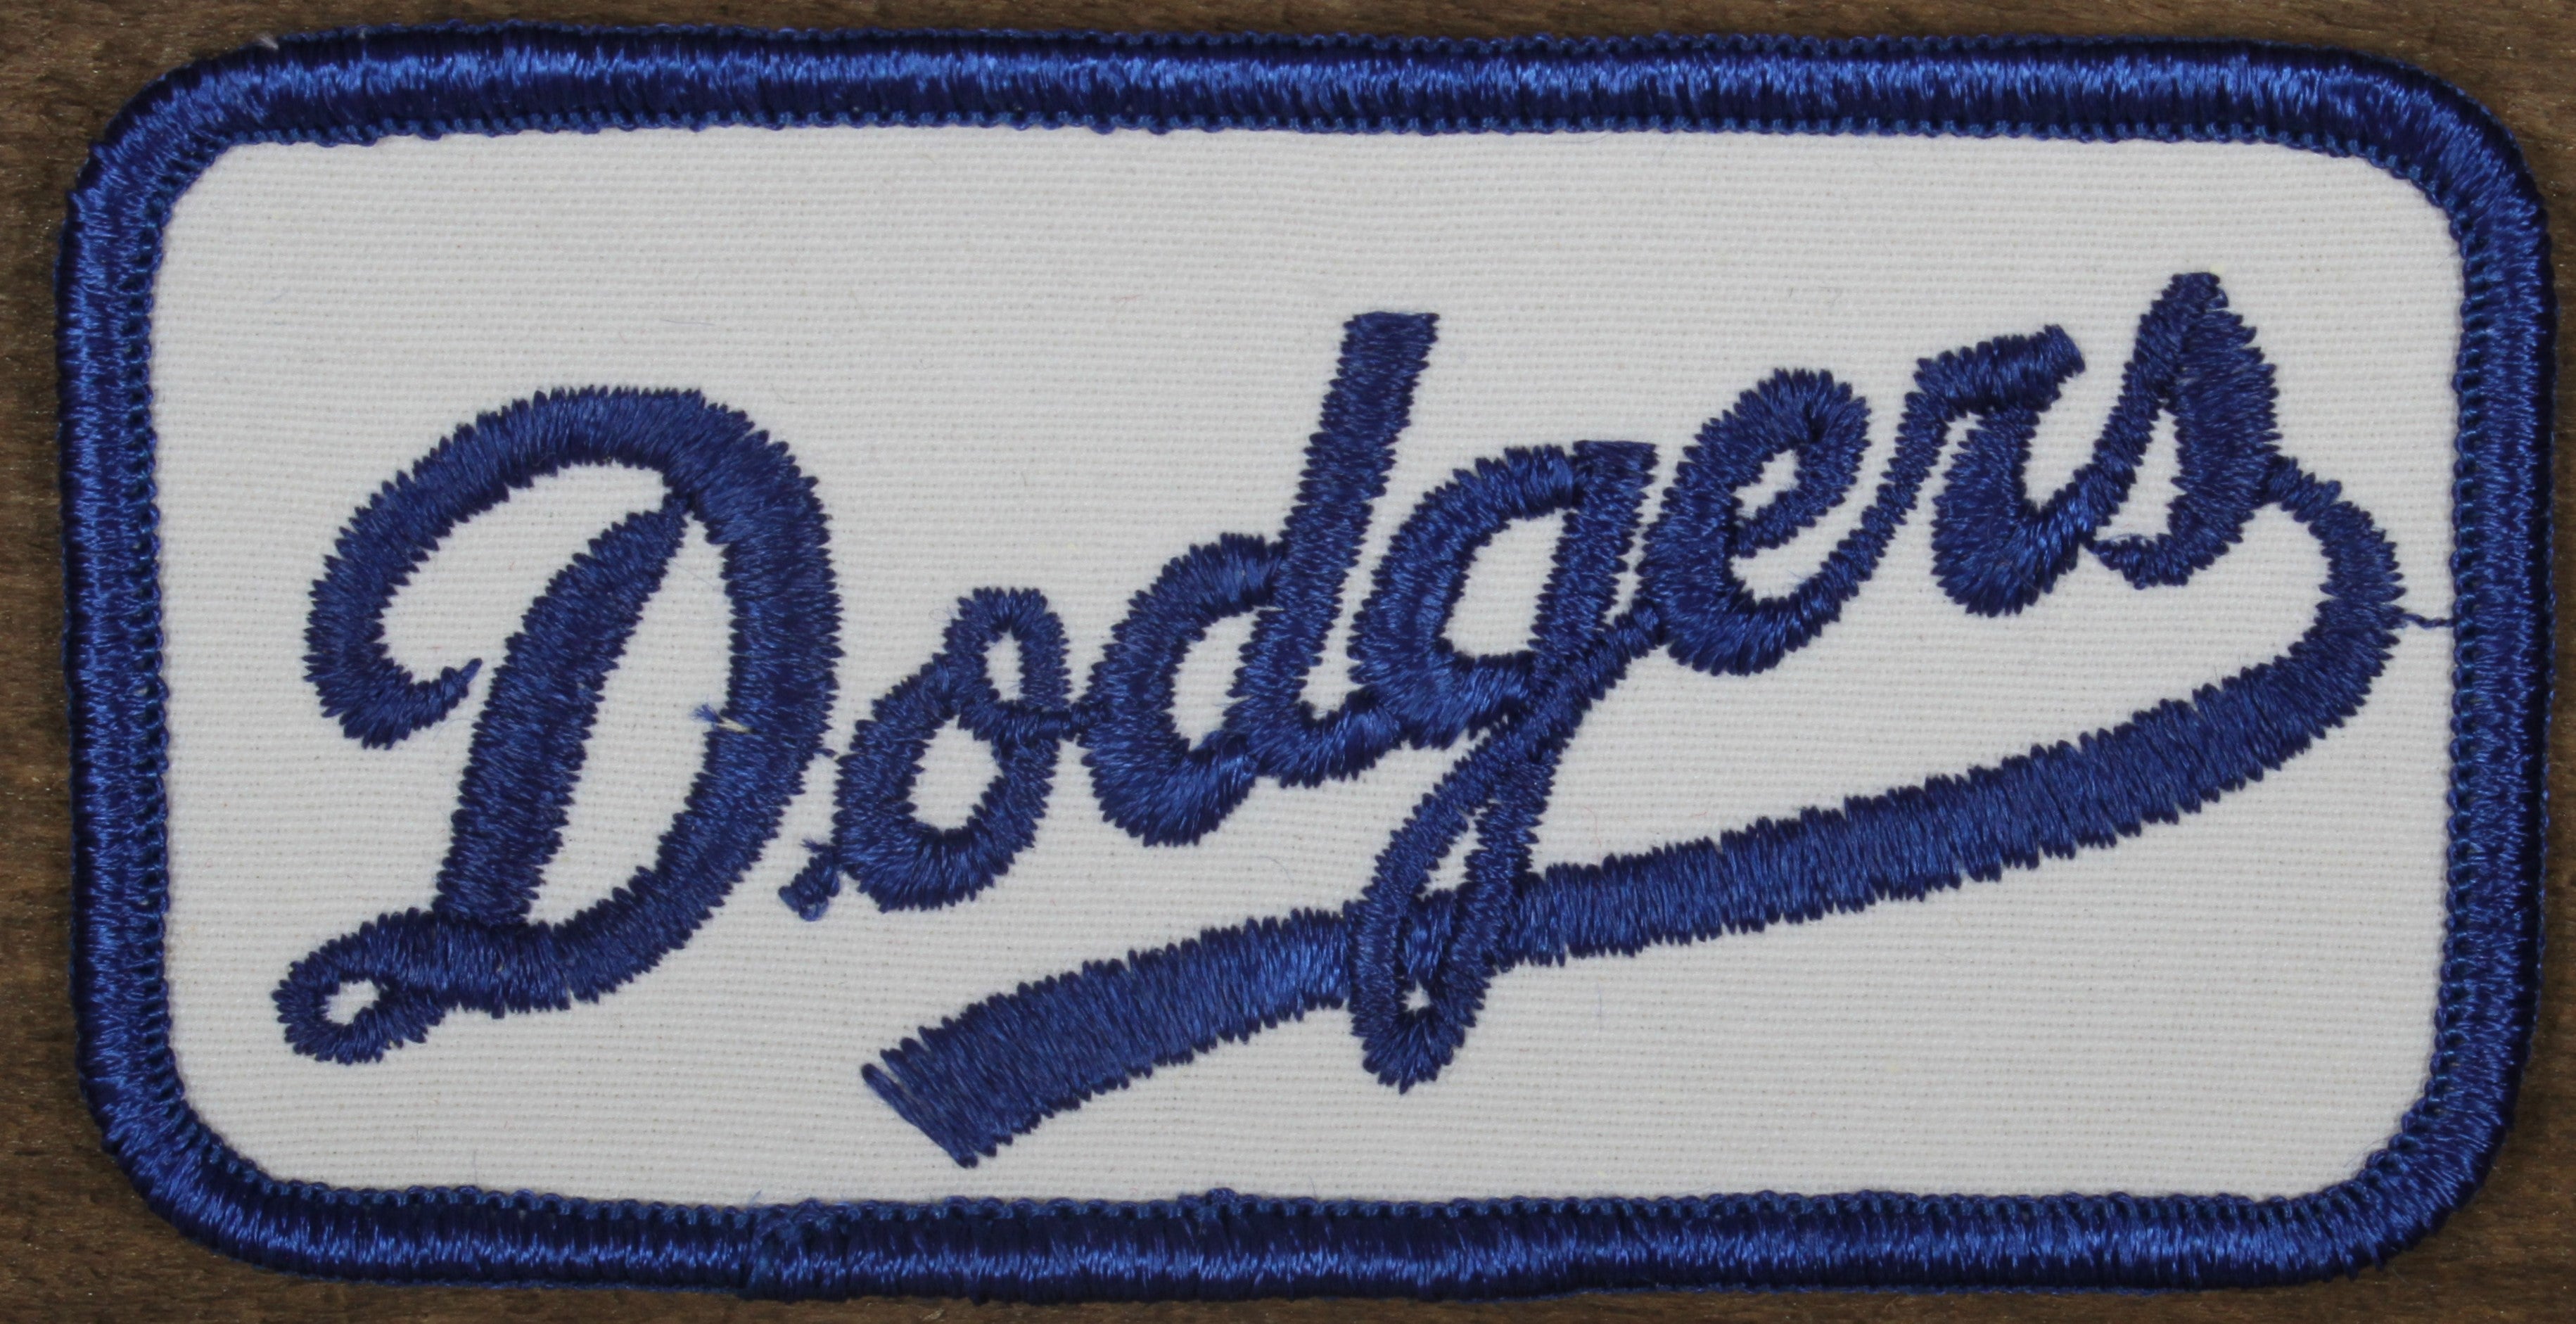 La Dodgers Patch